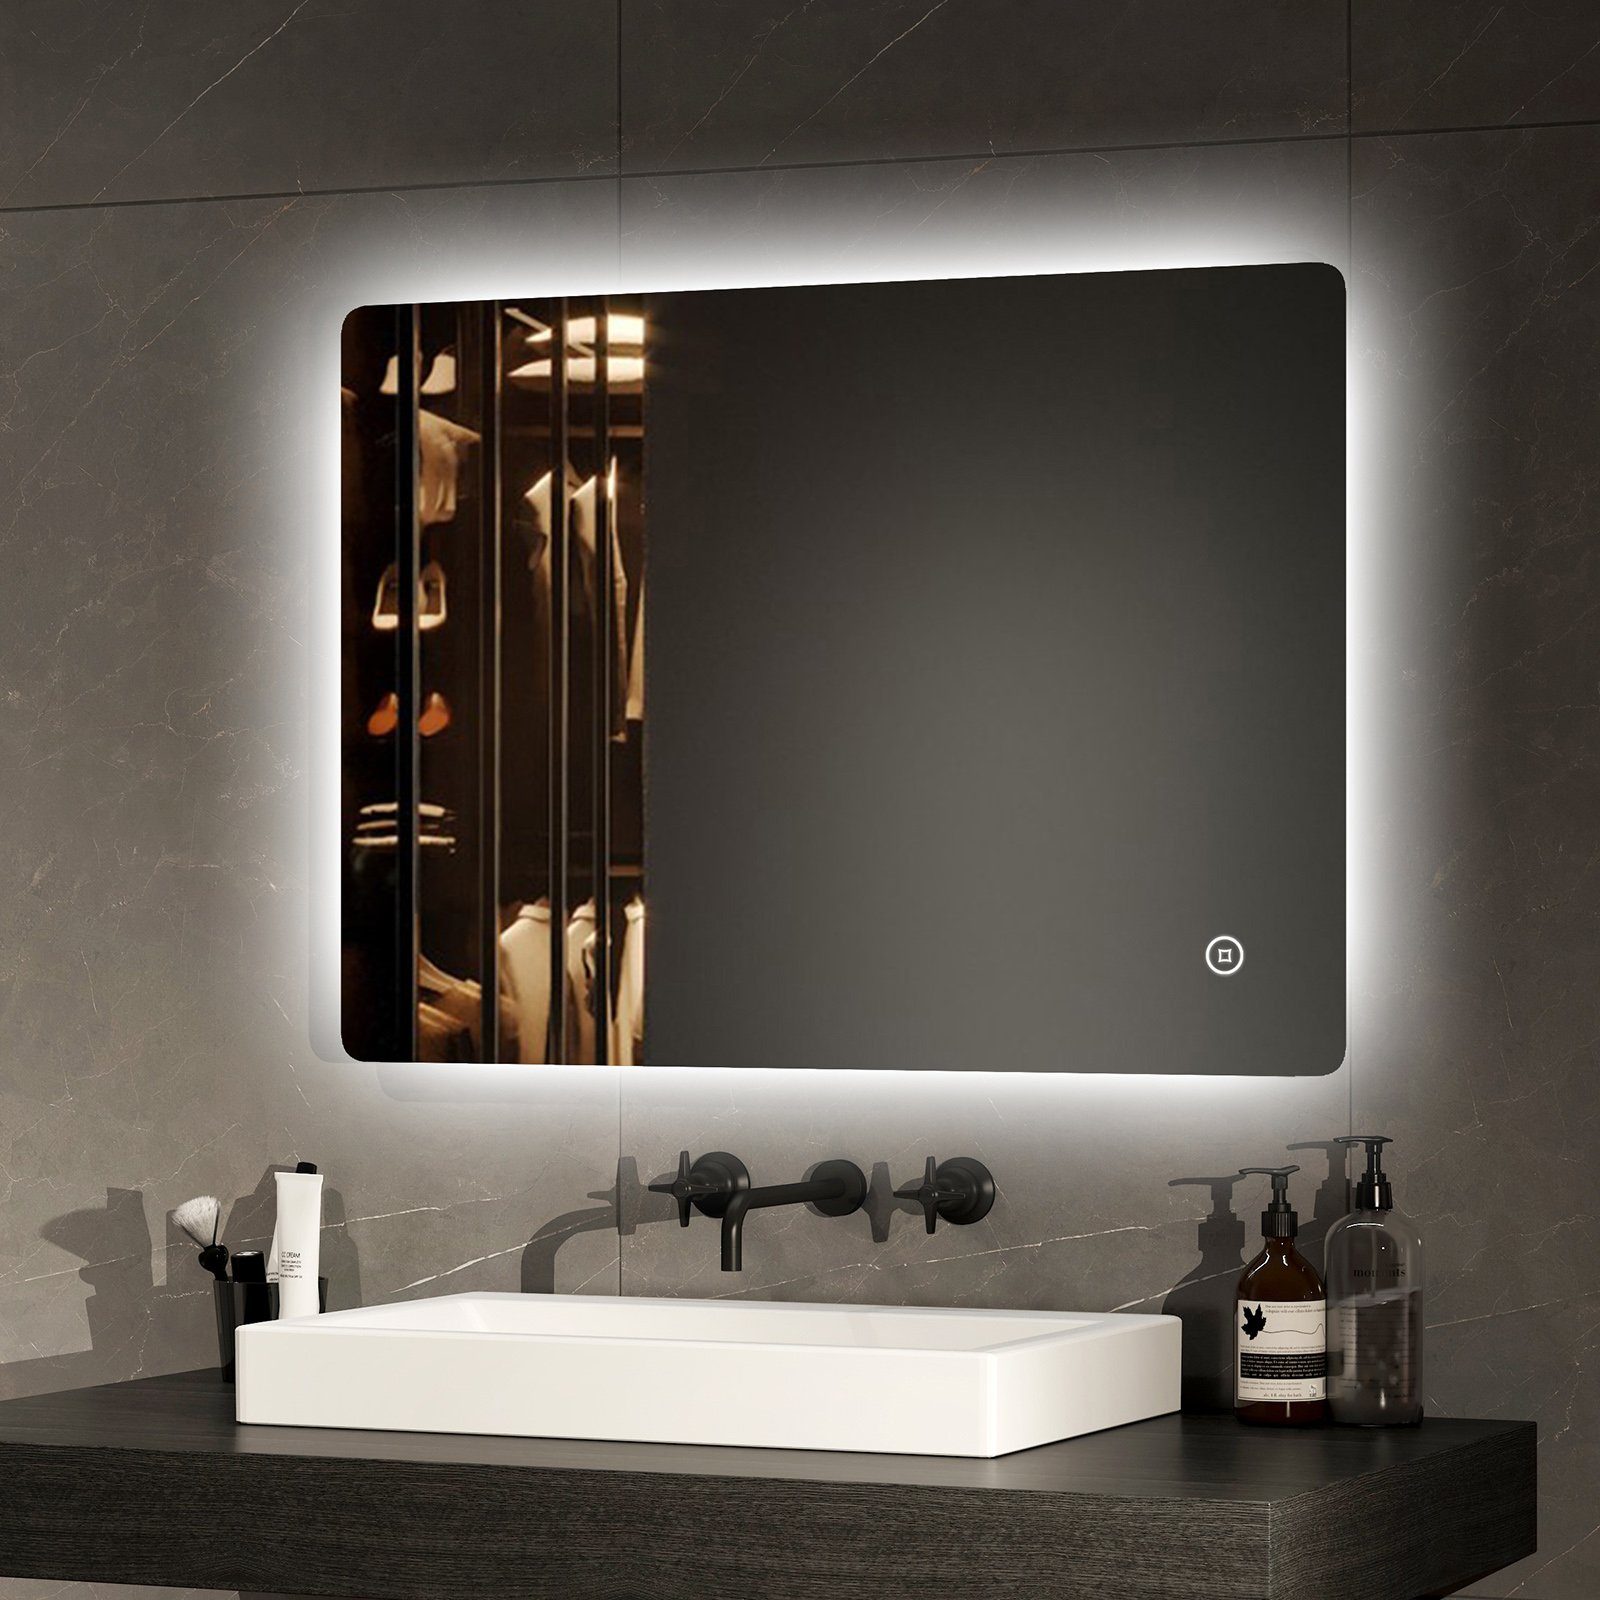 EMKE Badspiegel EMKE Badspiegel LED Badezimmerspiegel mit Beleuchtung, mit Touch-schalter und Beschlagfrei Modell 9